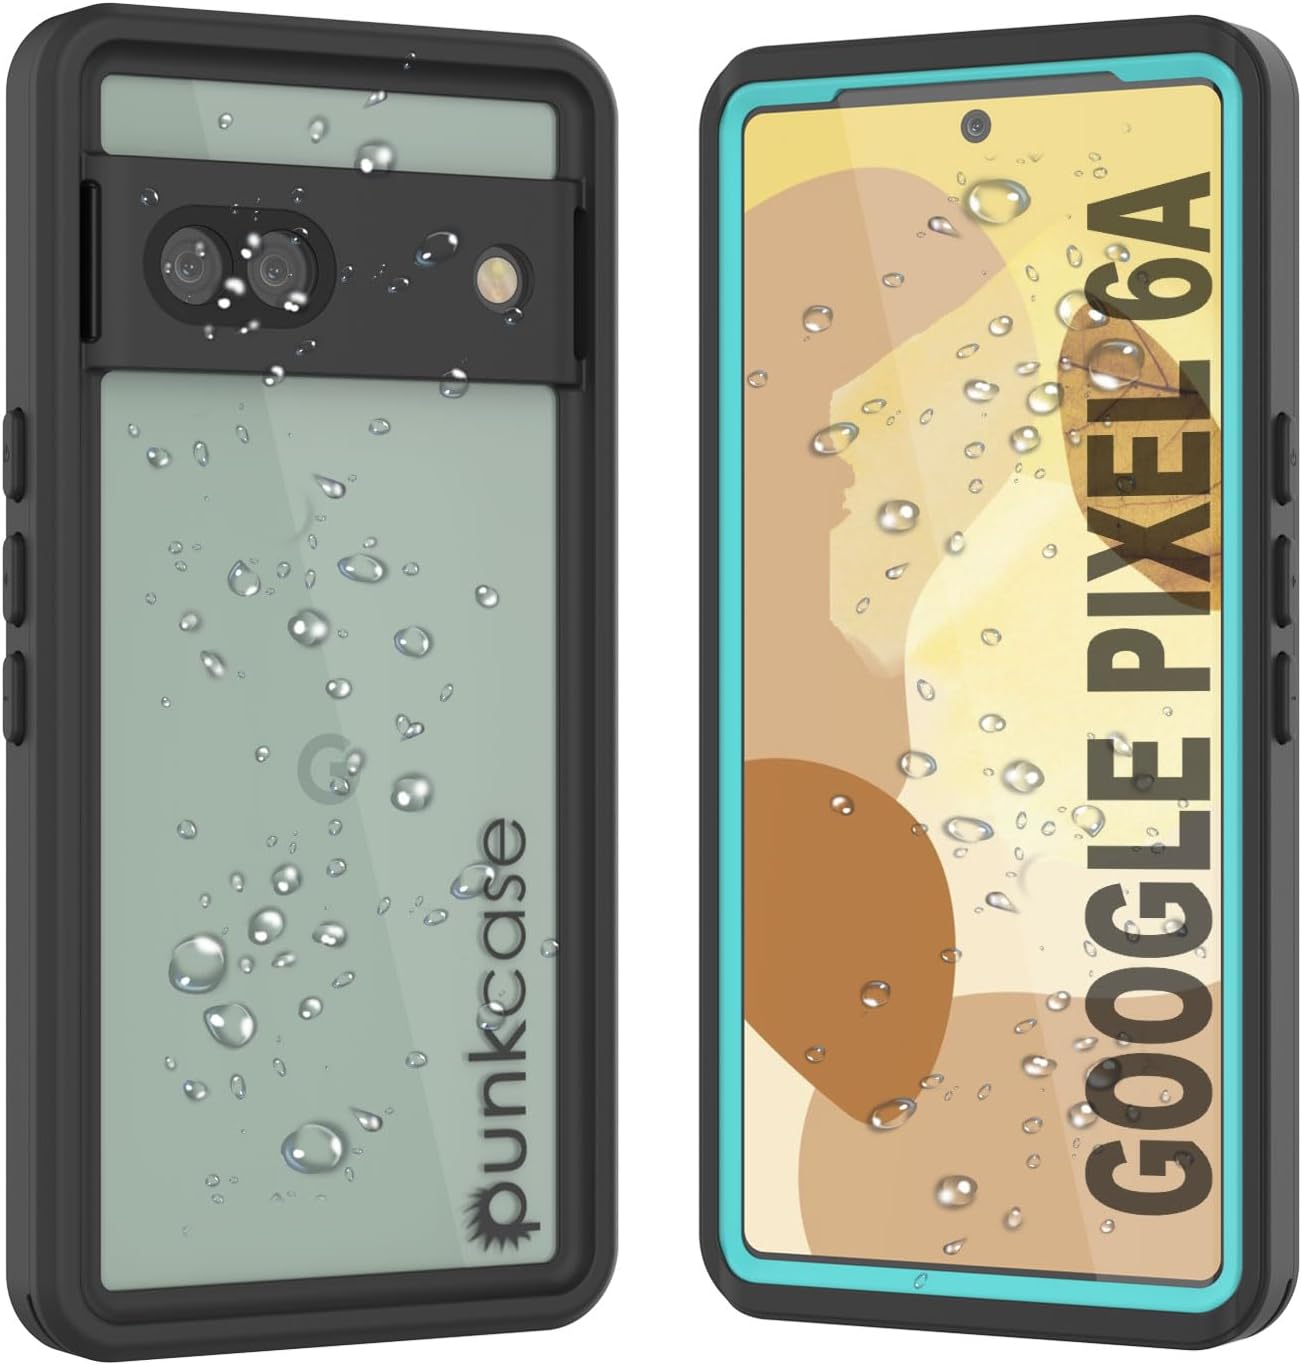 Google Pixel 6a Waterproof IP68 Case, Punkcase [Teal] [Extreme Series] [Slim Fit]